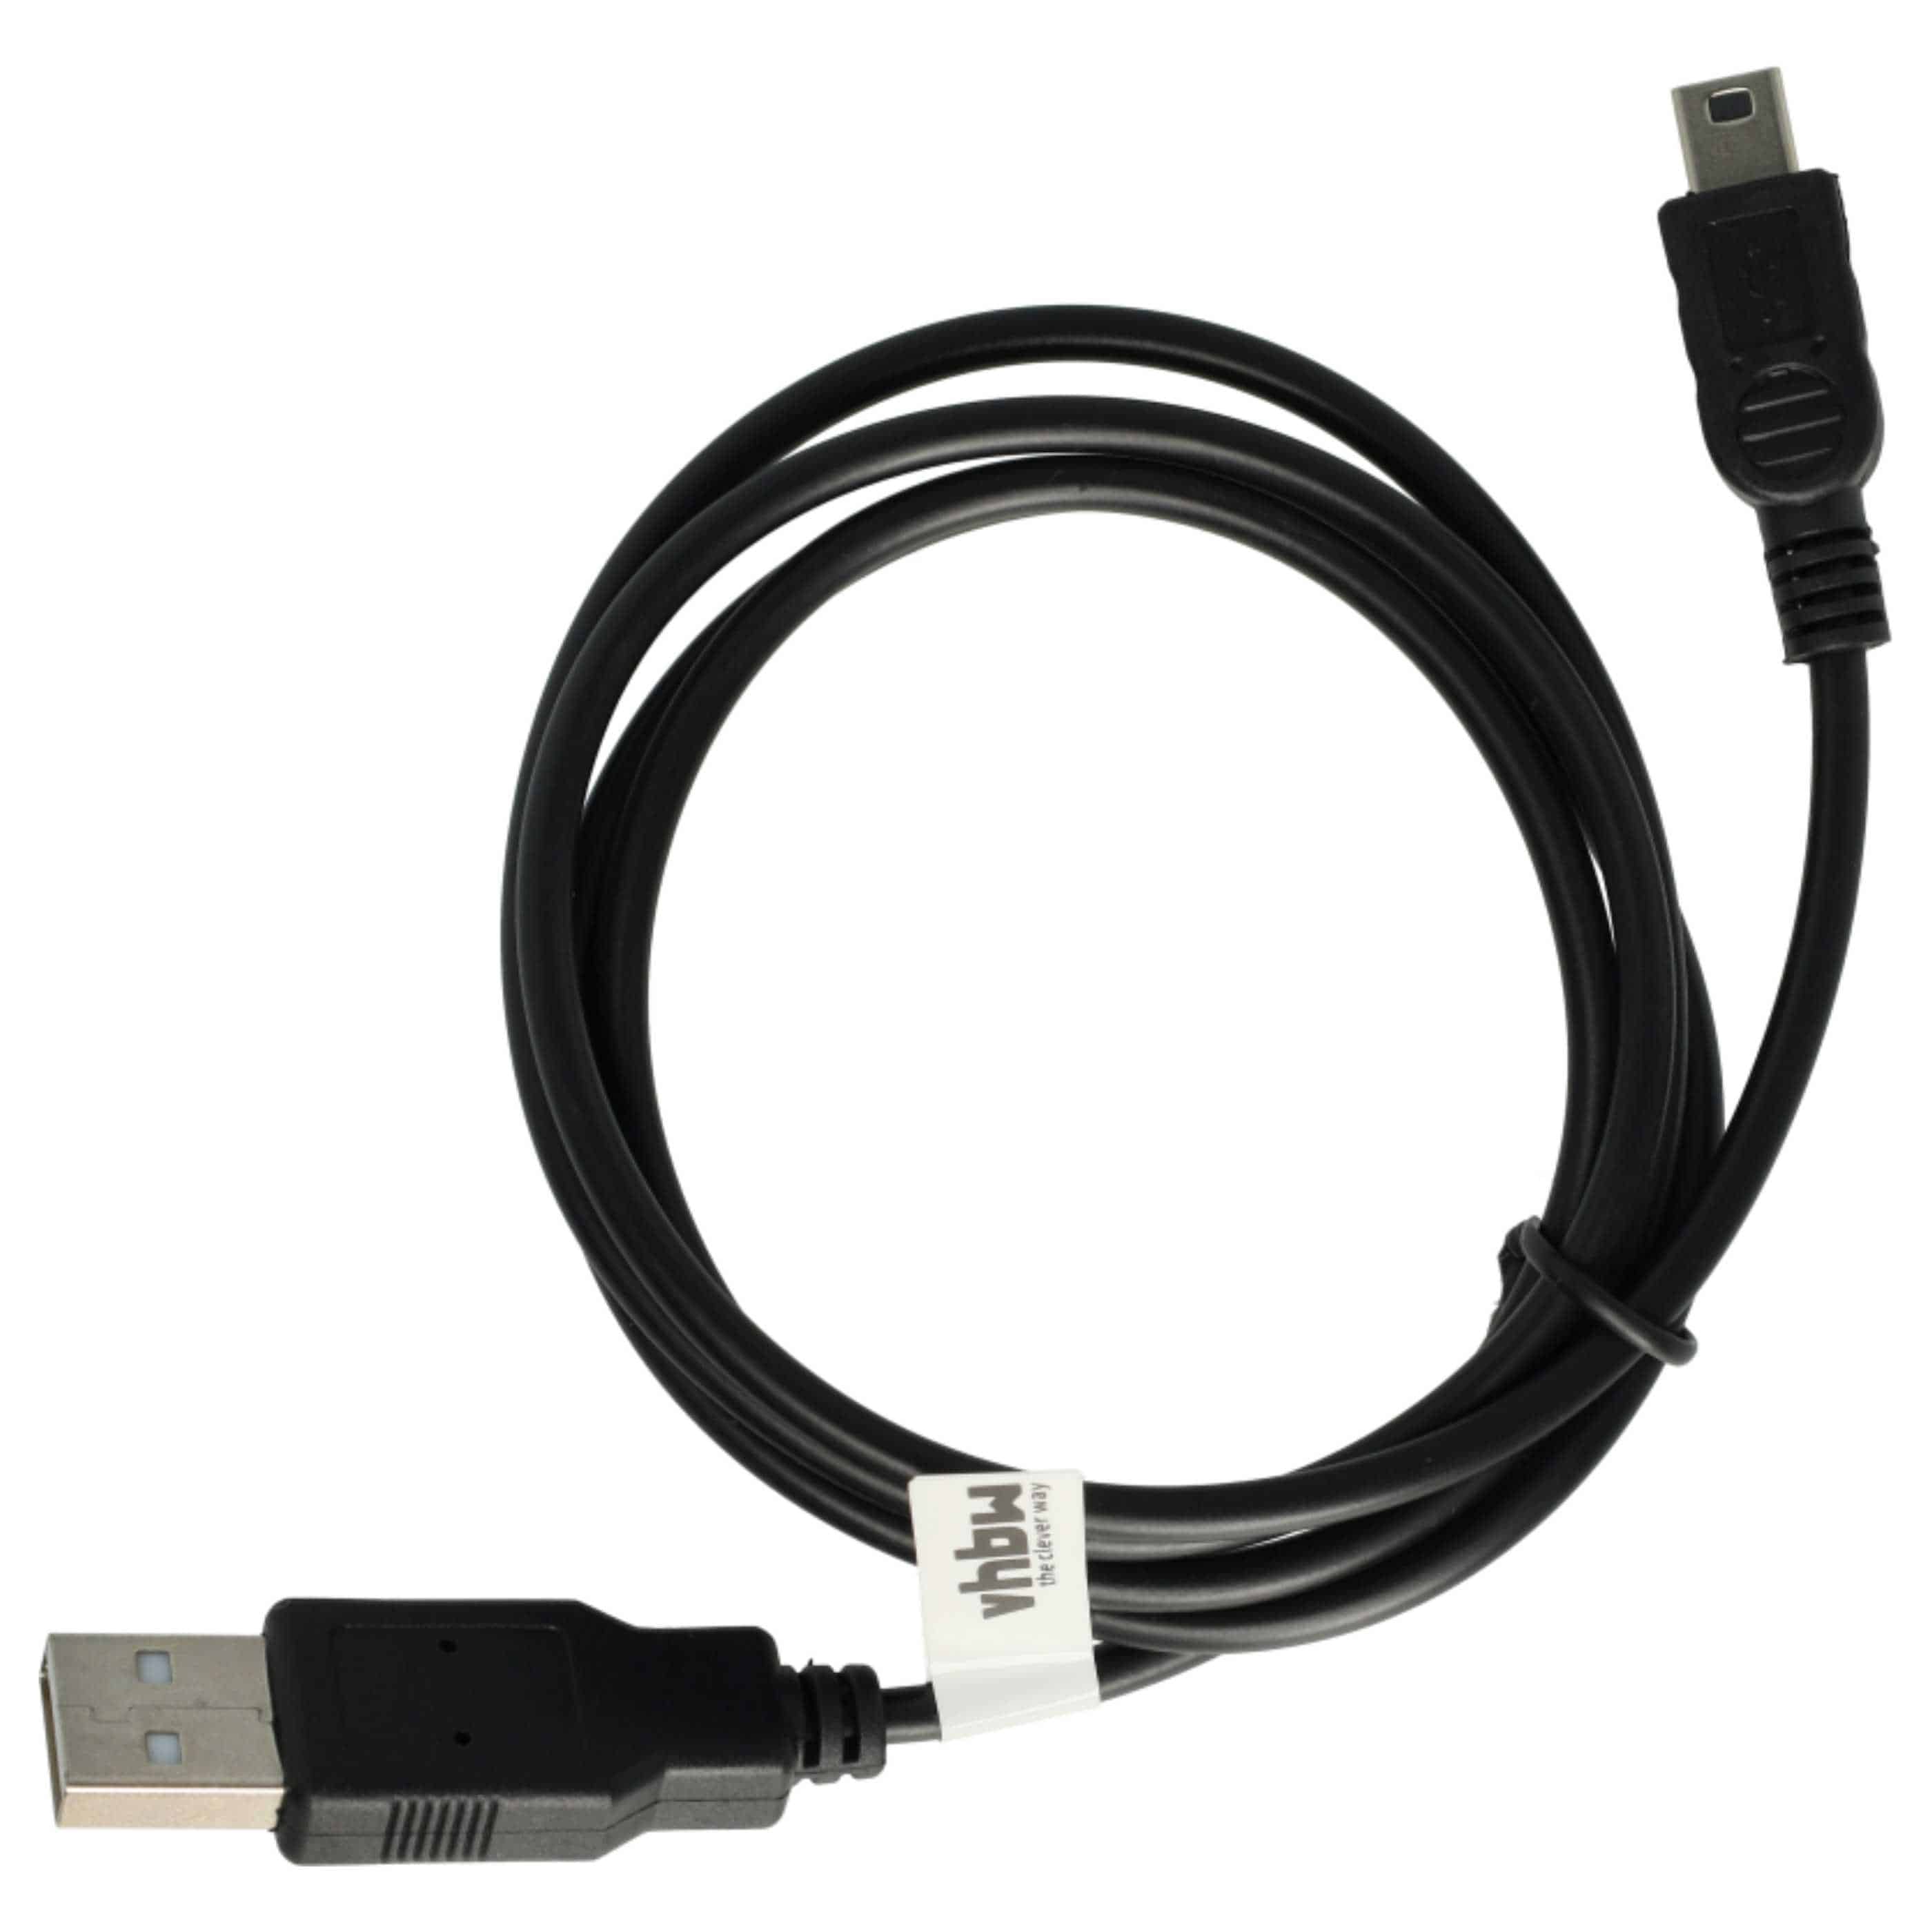 vhbw Câble USB console - câble de données 2 en 1 / chargement 1m de long100cm de long